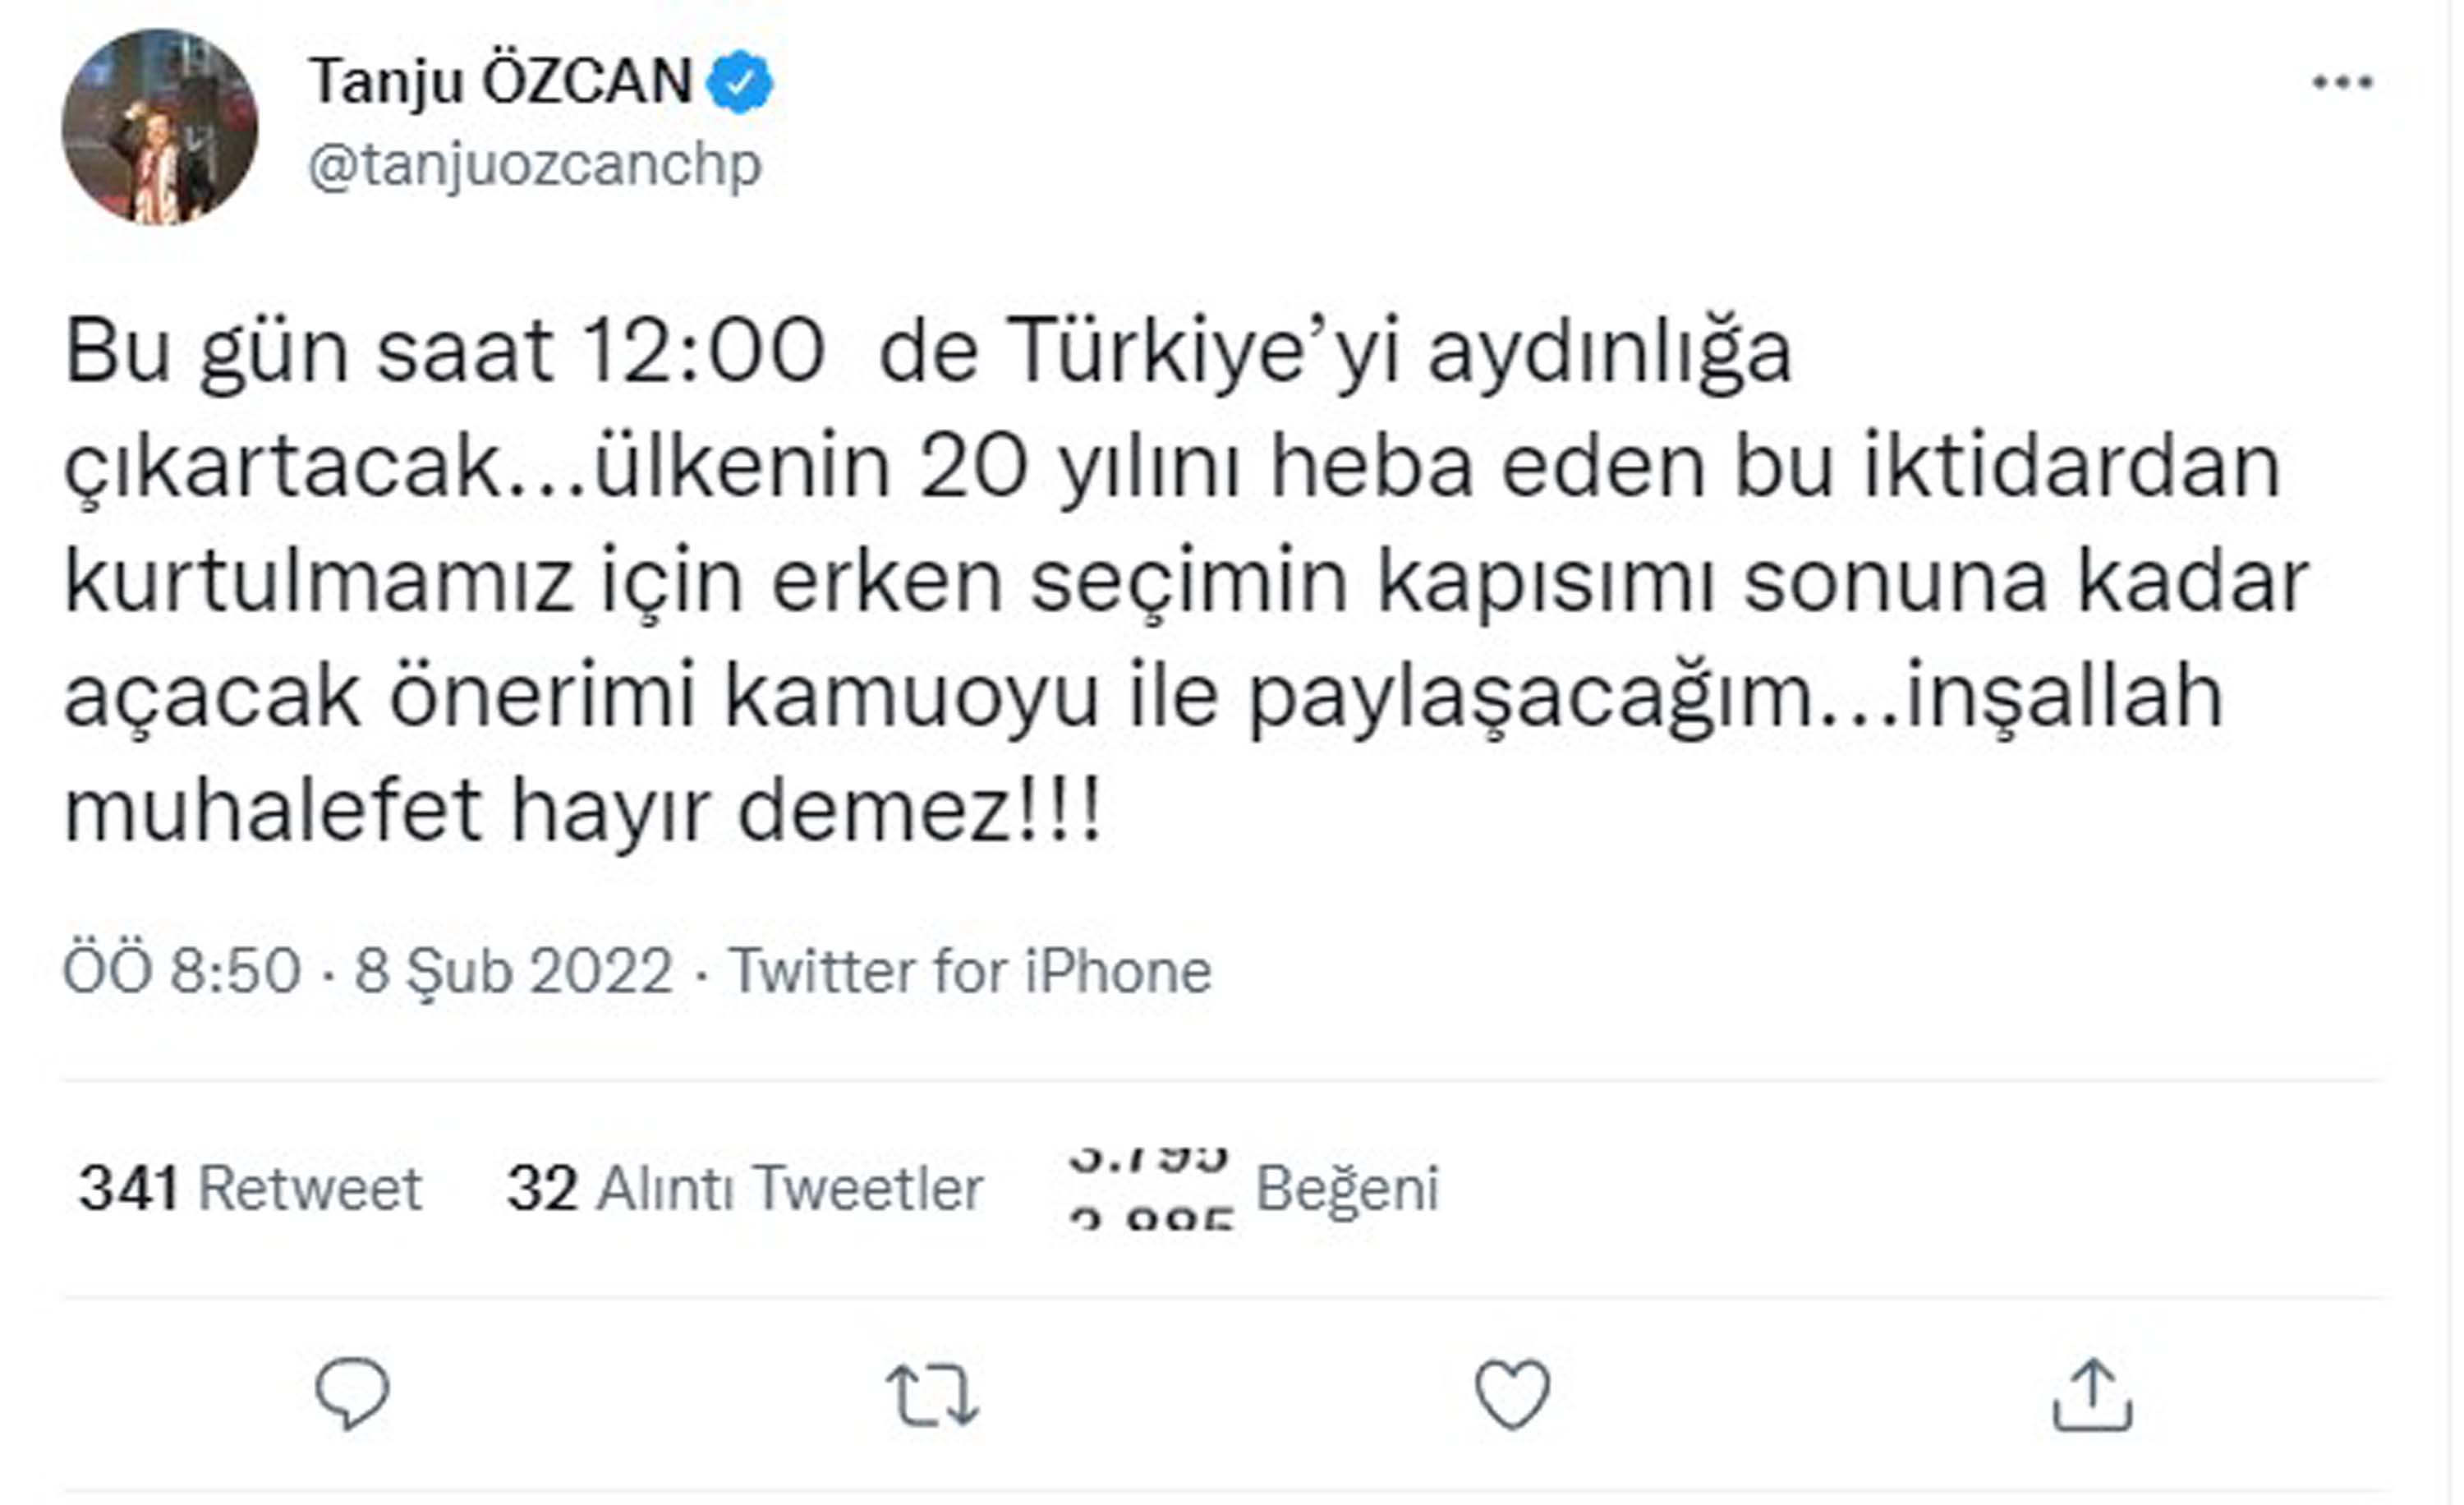 Tanju Özcan yapacağı açıklamayla, Türkiye'yi aydınlığa çıkaracak, erken seçimi getirecekmiş ! Tanju neyi itiraf edecek, erken seçimle ne ilgisi var?